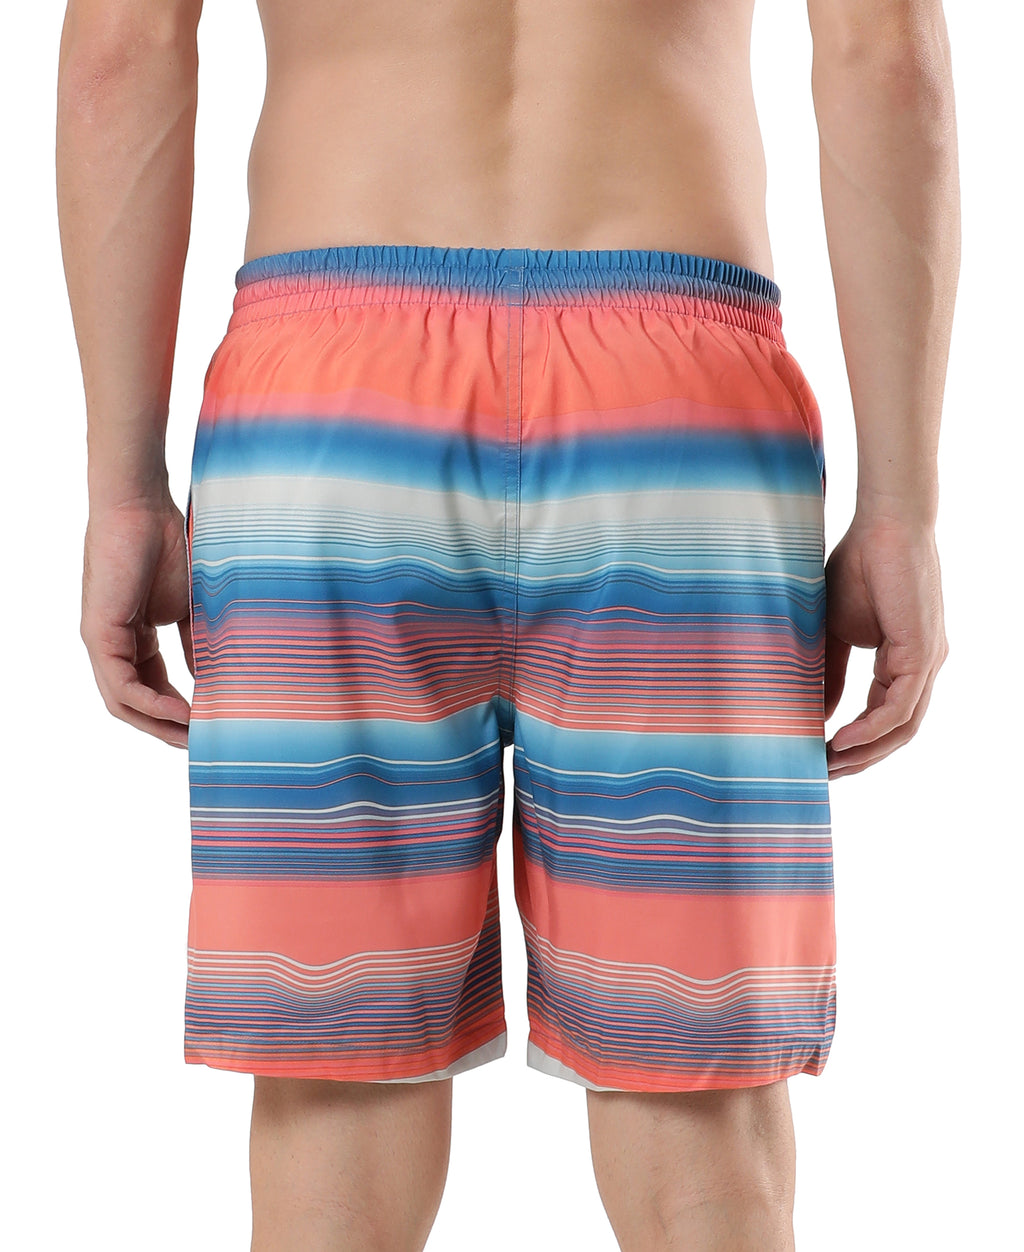 Swimwear for Men - Mens swimming trunks - Swim shorts men - swimming costumes for guys online